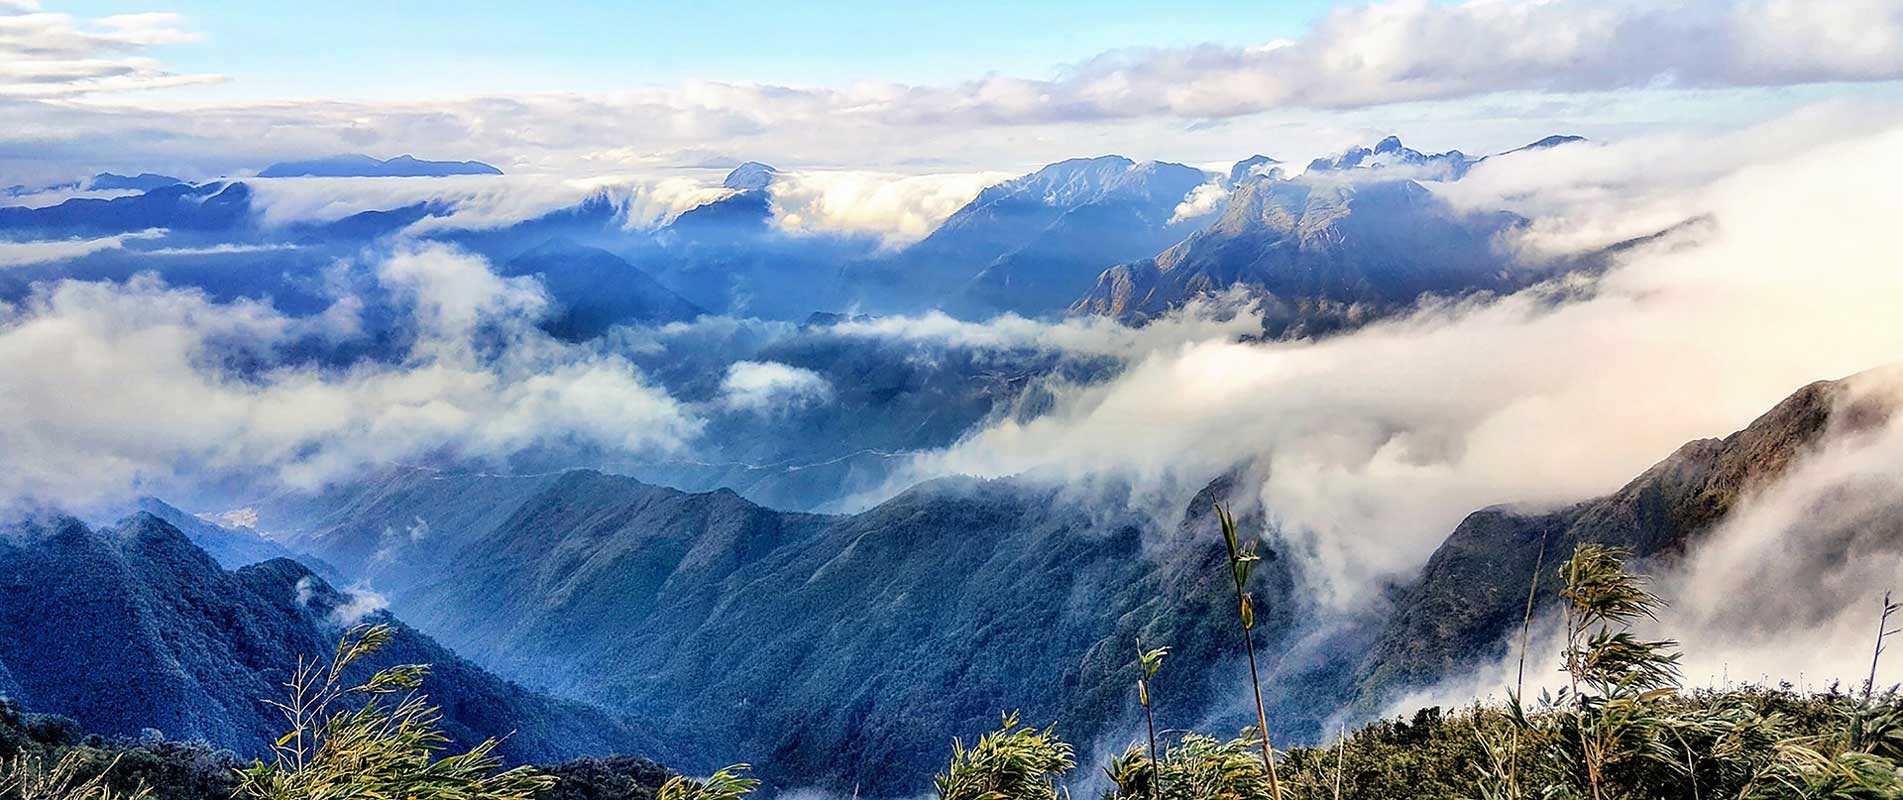 Mer de nuages entre les montagnes au Vietnam